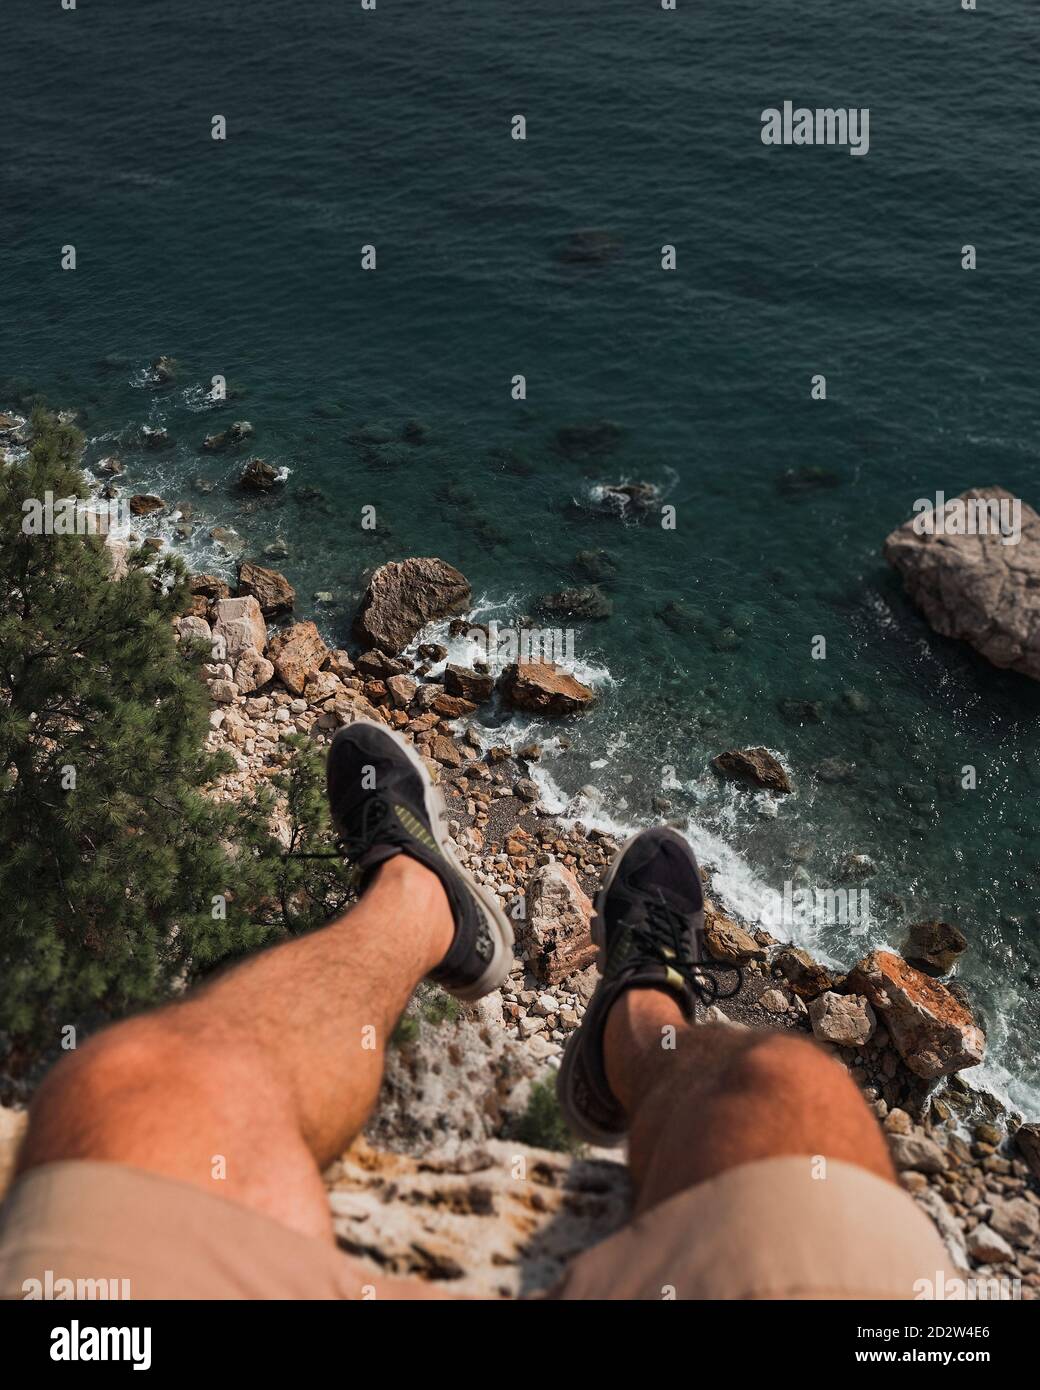 Le gambe dell'uomo sono appese dal bordo della scogliera sopra il mare e le rocce. Foto Stock